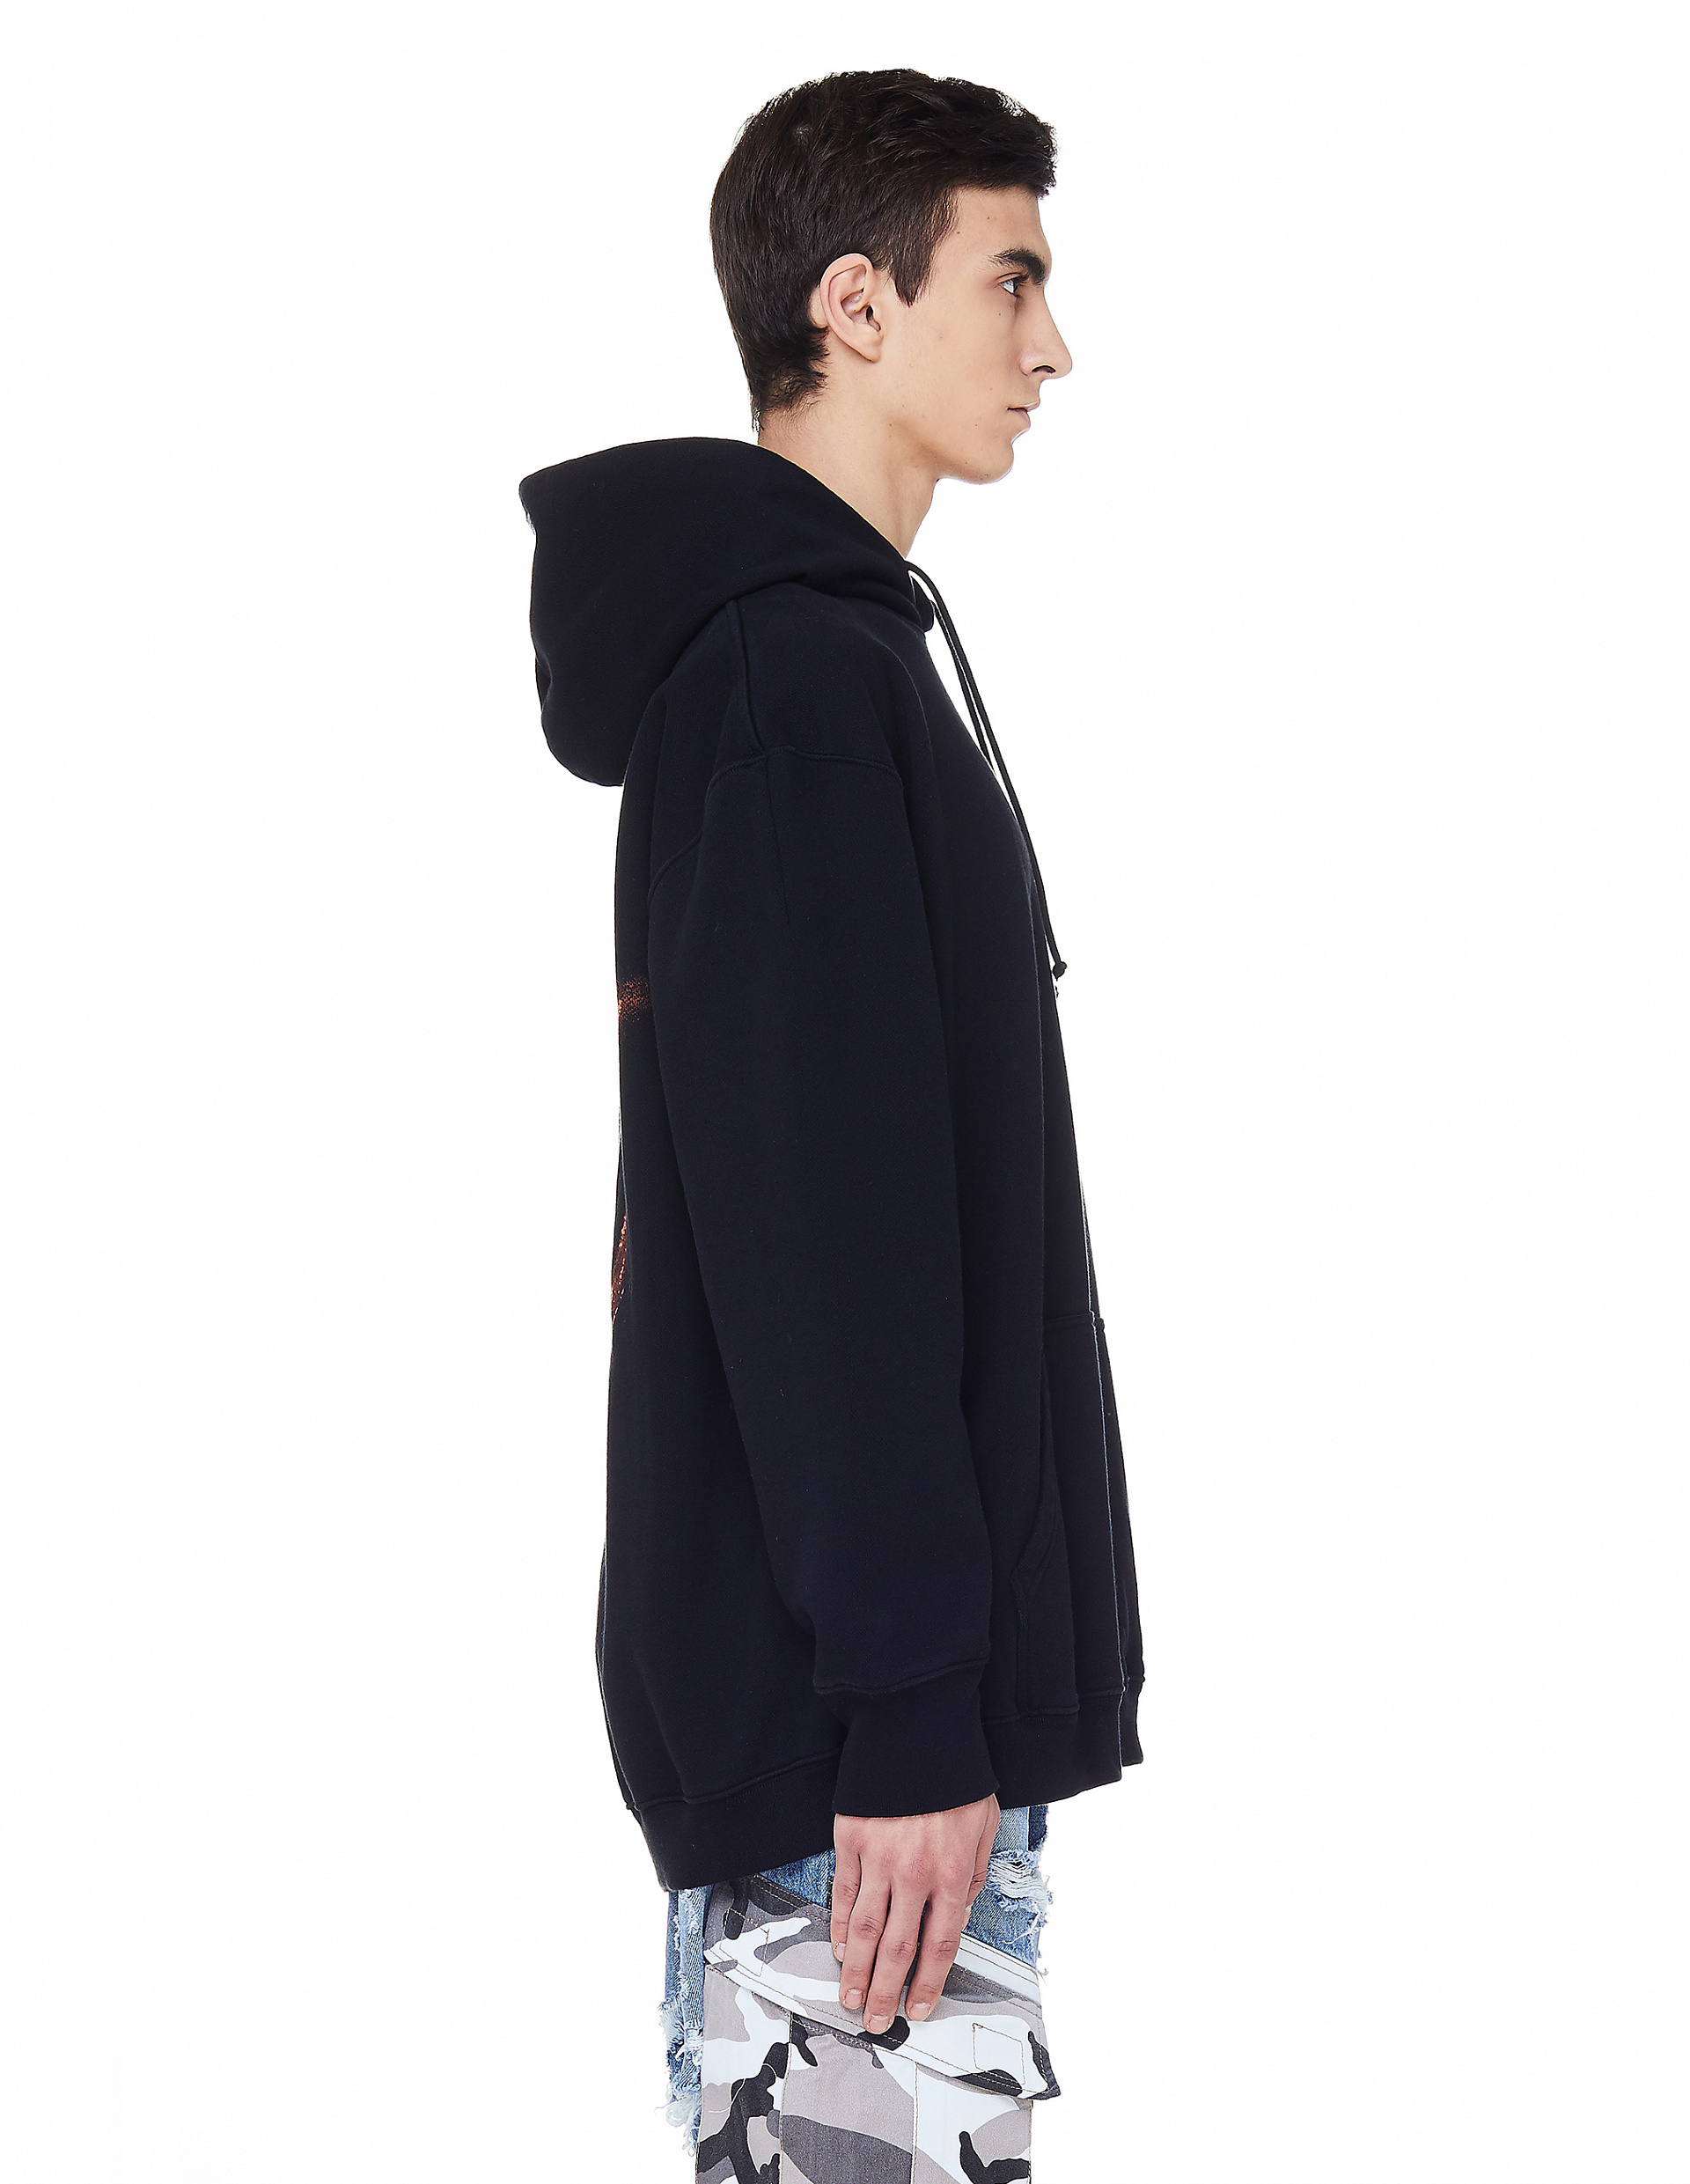 Buy Vetements men black anarchy printed hoodie for $910 online on